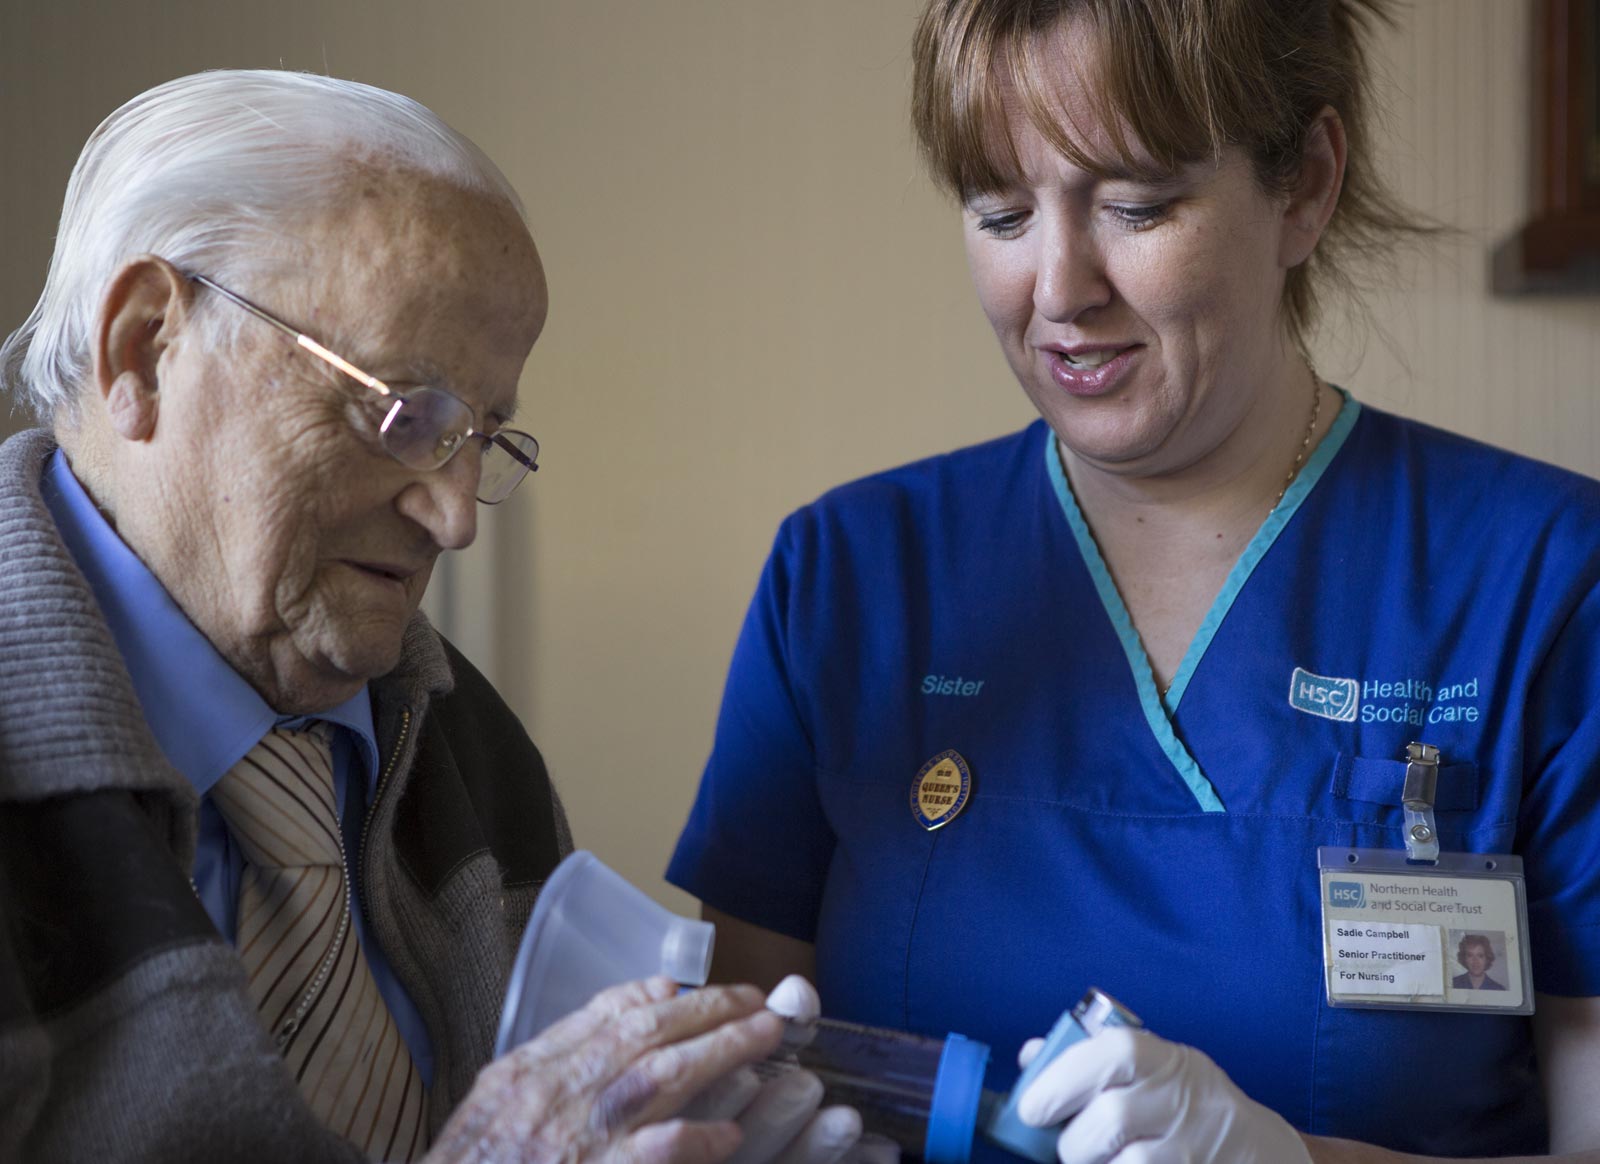 A district nurse helping an elderly man with an inhaler